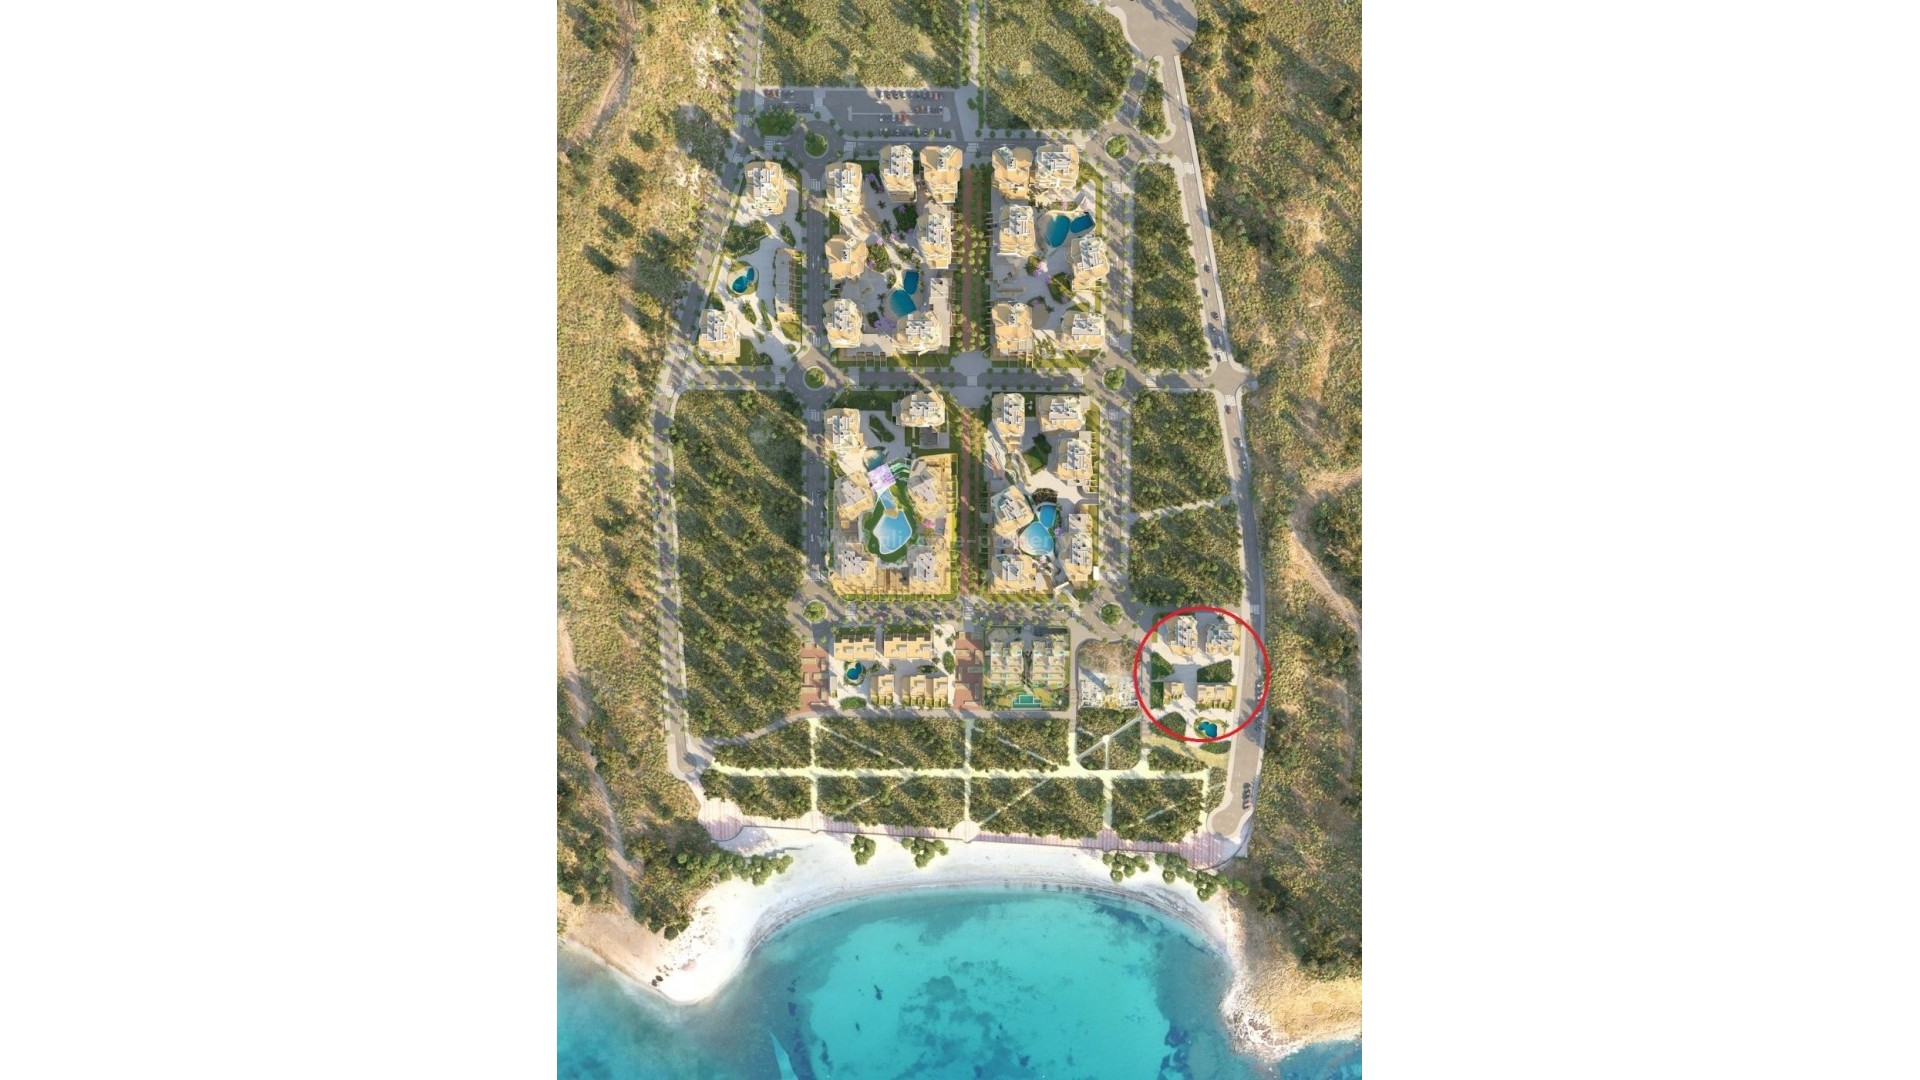 Luksus-leiligheter og toppleiligheter rett ved sjøen i Villajoyosa, 2 soverom, 2 bad,Bare 50 meter fra sjøen, med romslige terrasser med havutsikt